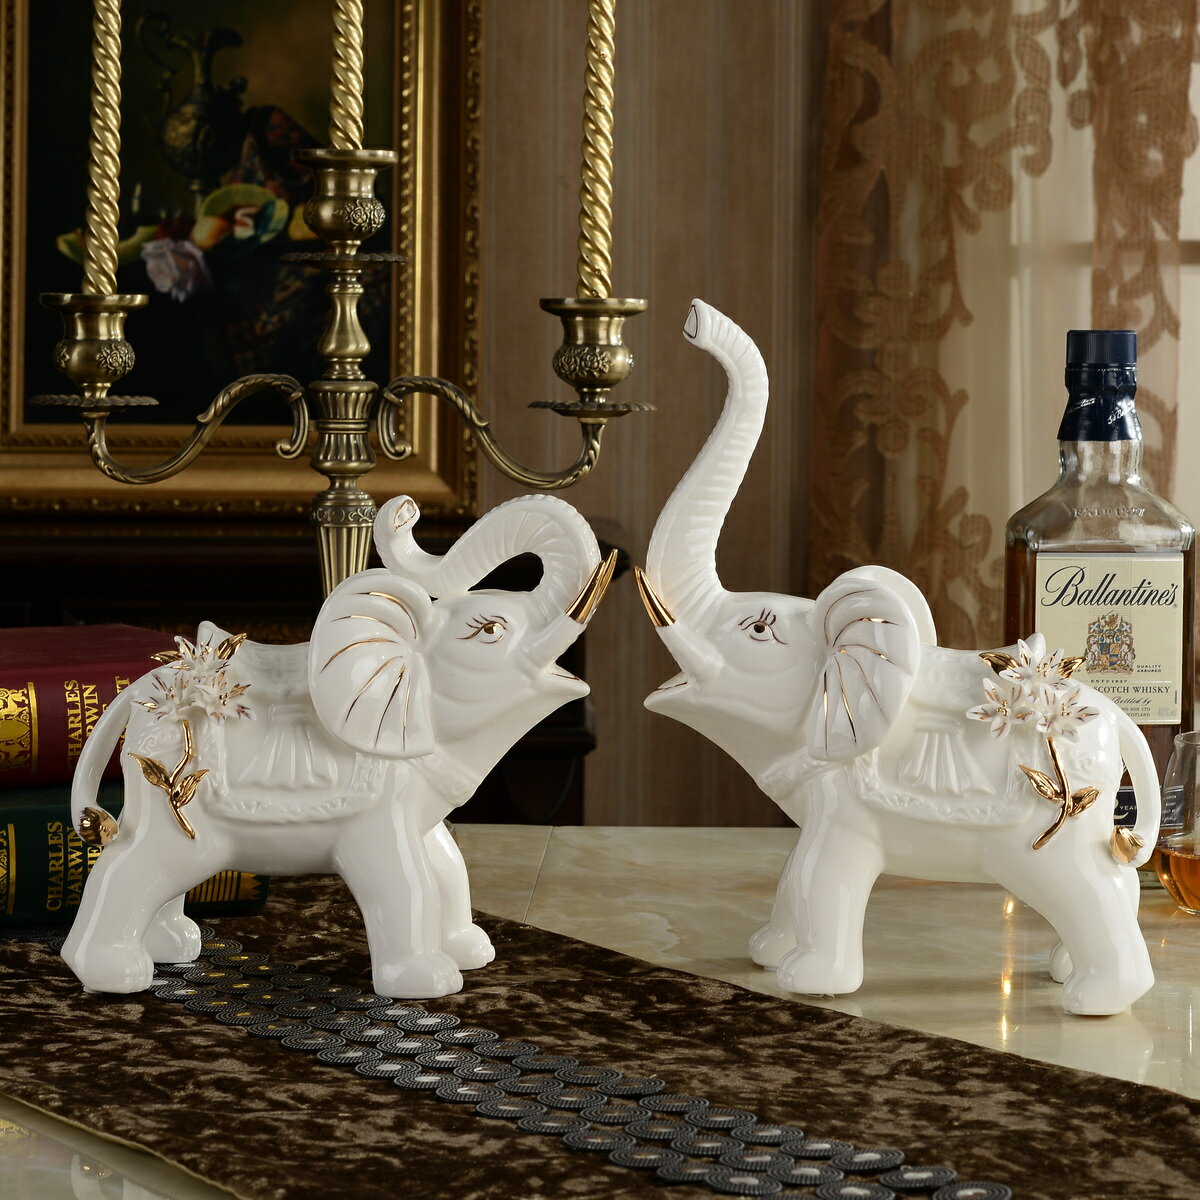 陶瓷大象擺件動物創意輕奢客廳電視柜酒柜喬遷新居家居裝飾品招財